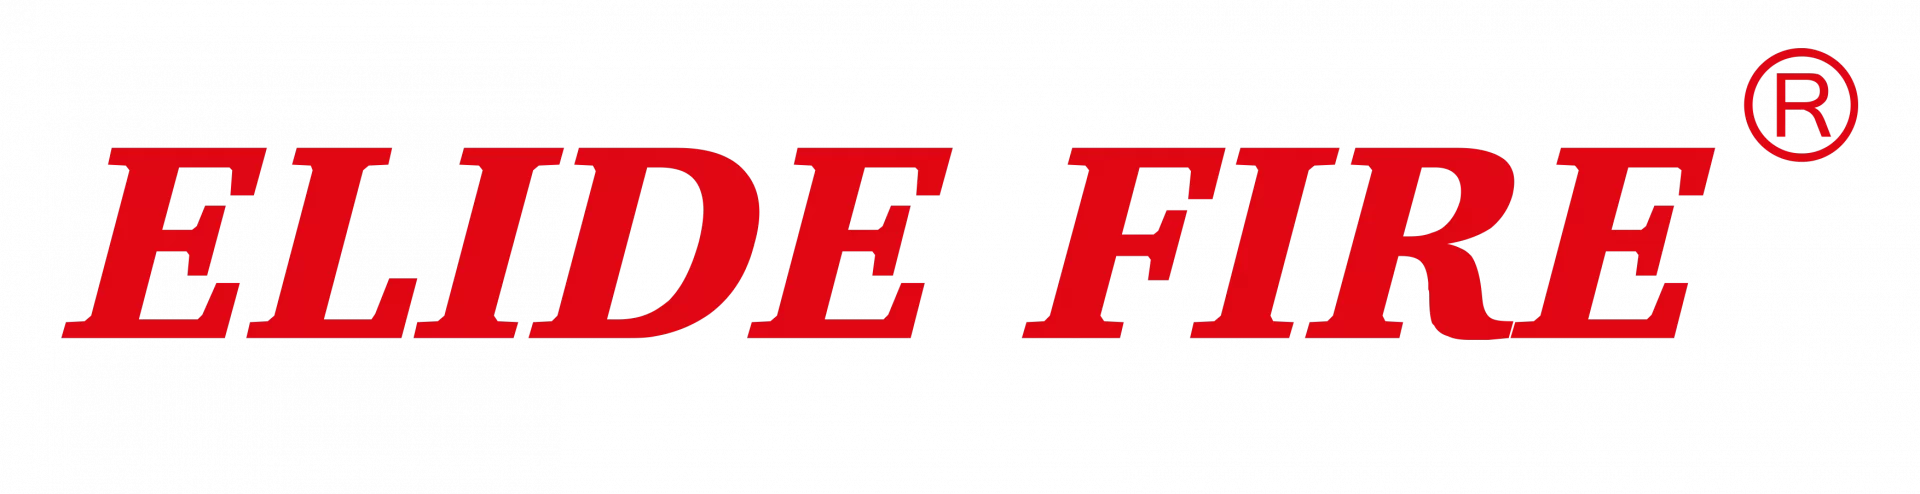 elide-fire-logo